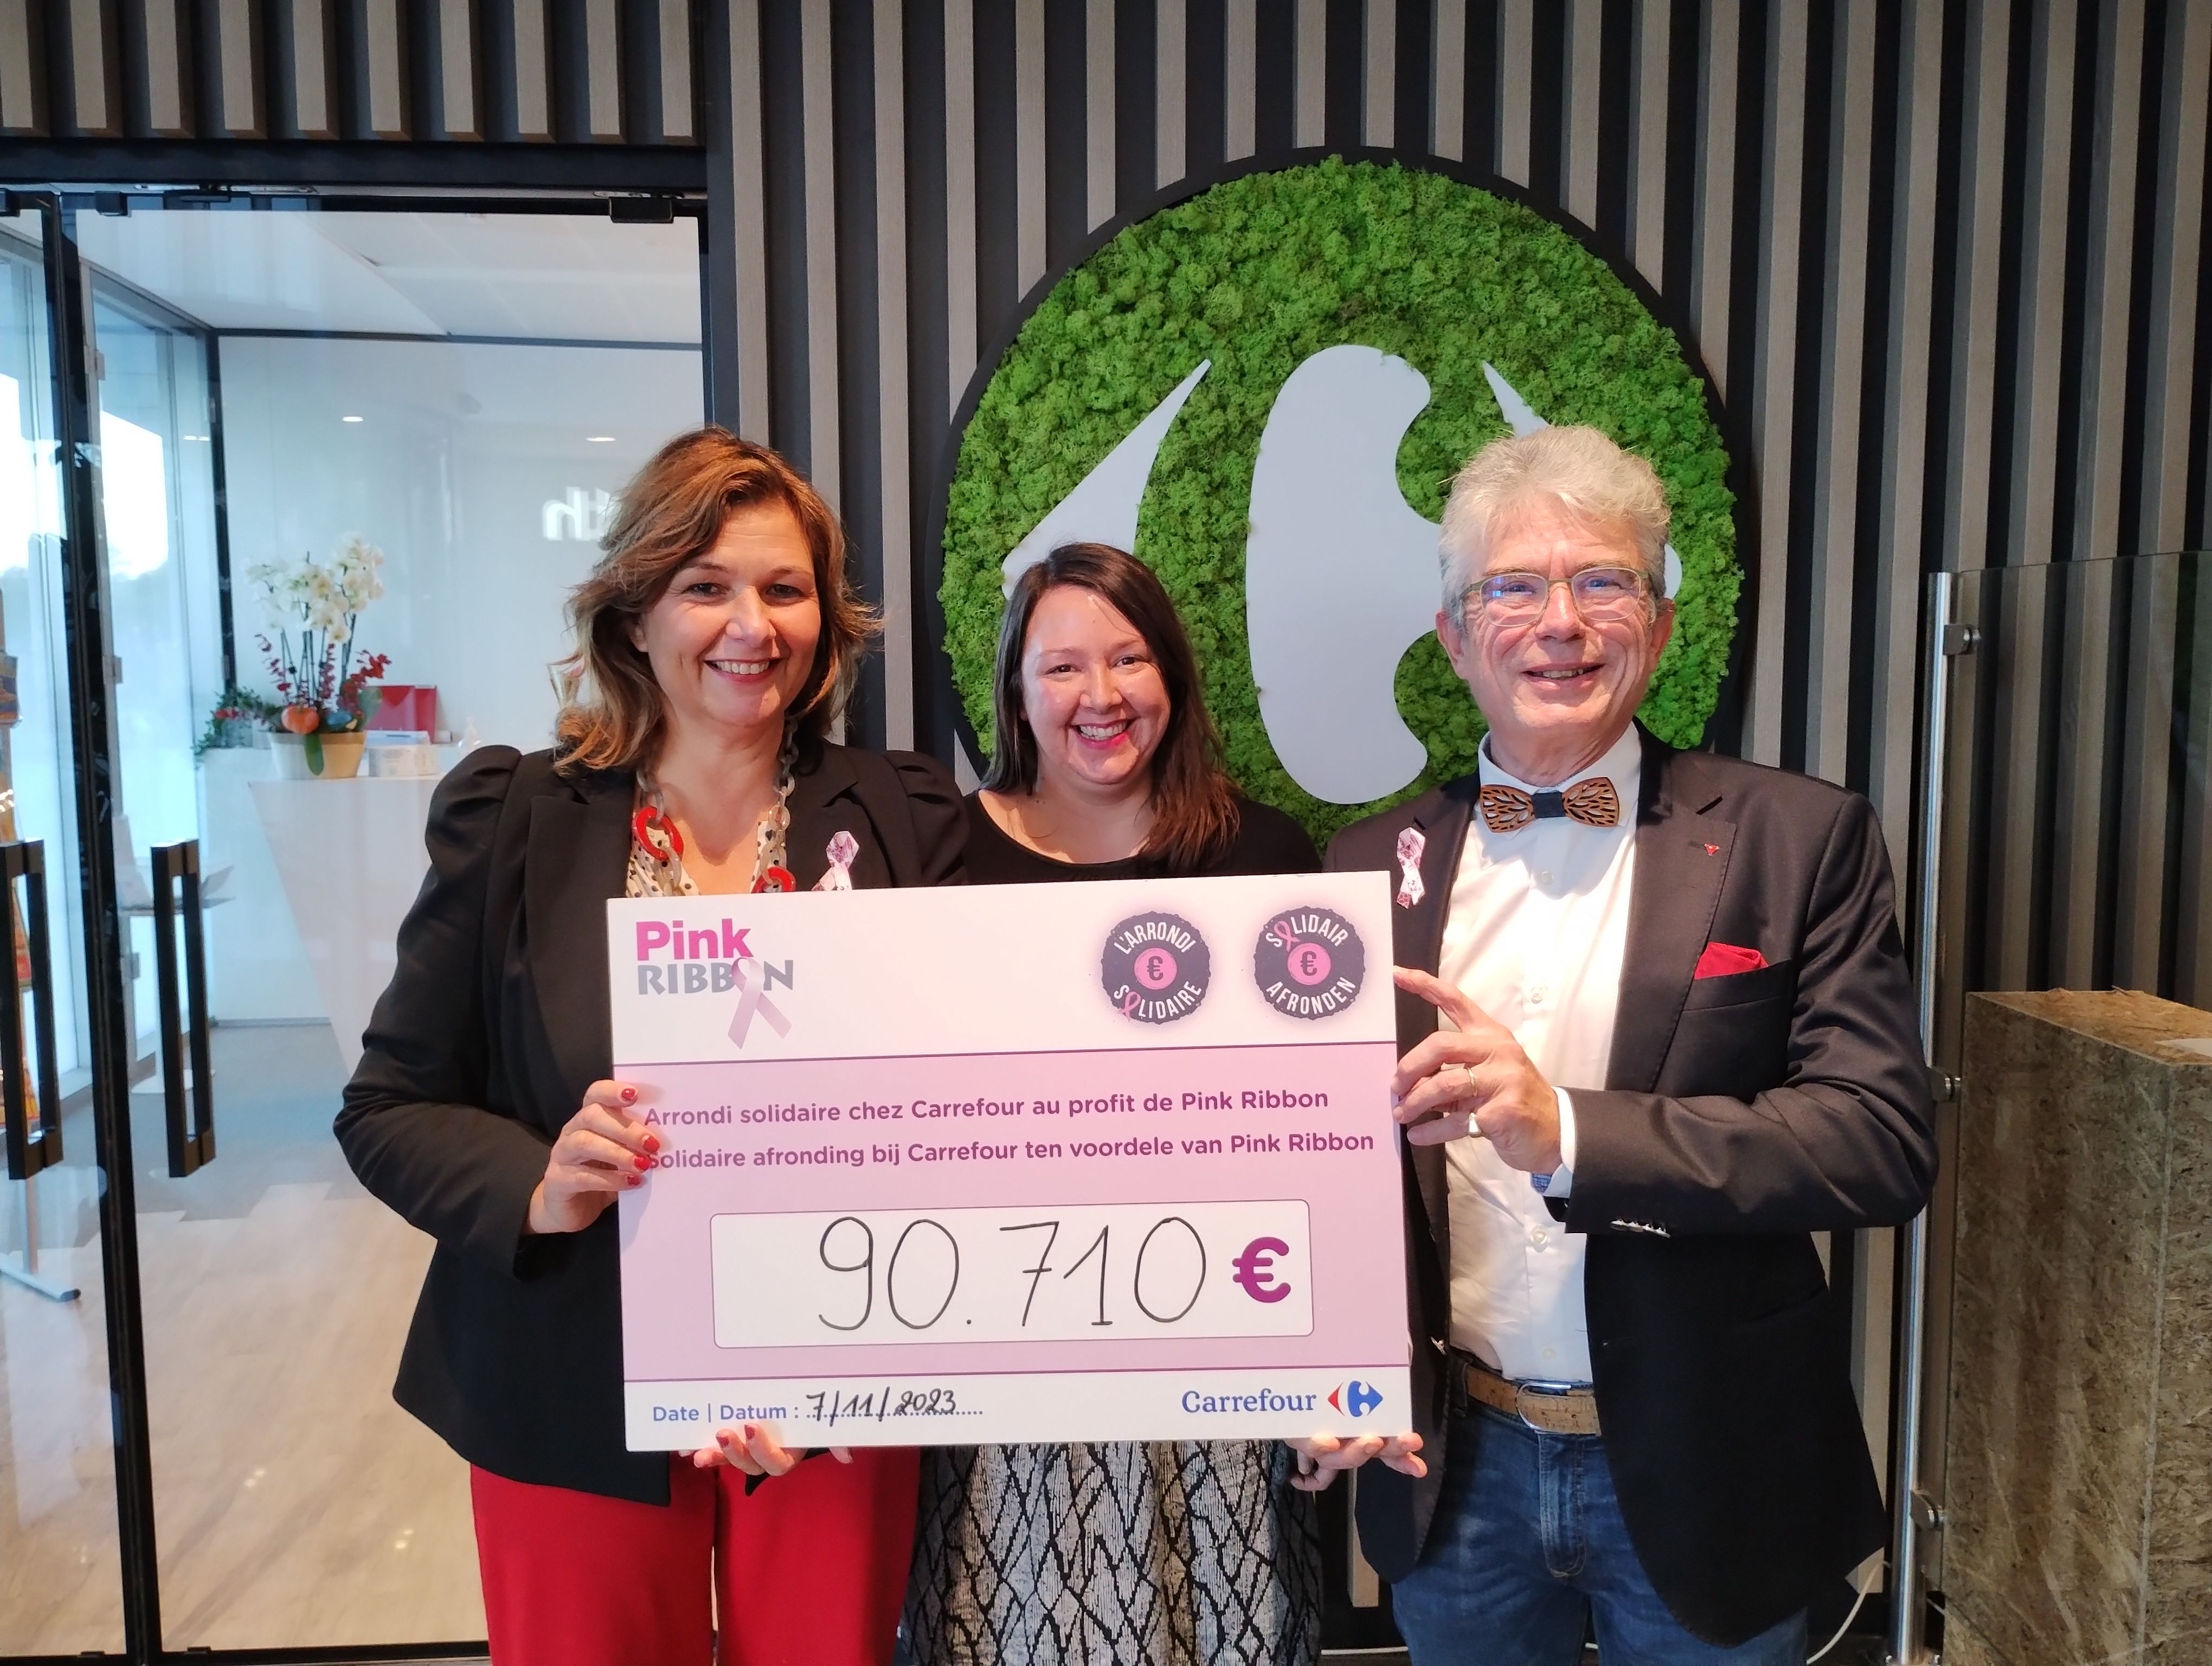 « L’Arrondi Solidaire » de Carrefour permet de récolter 90 710 € pour l’asbl Pink Ribbon